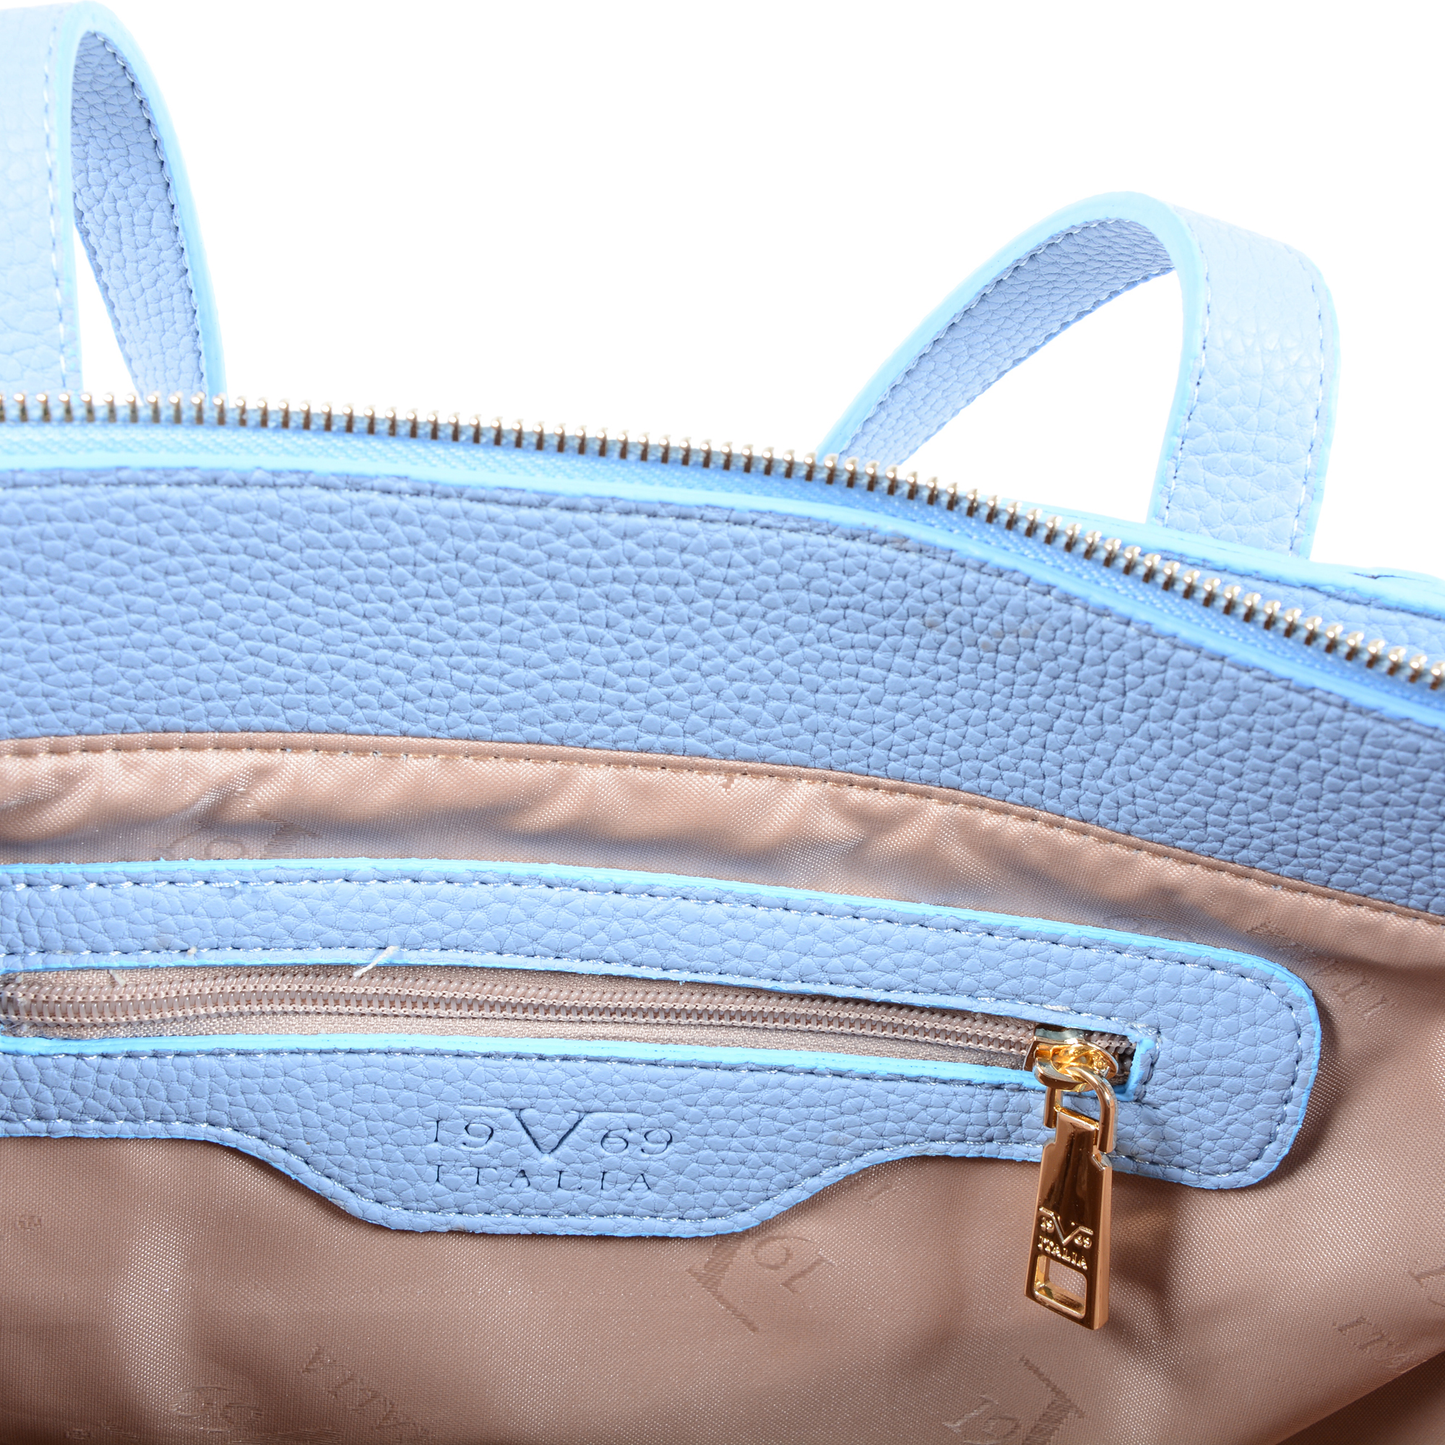 19V69 Italia Womens Handbag Light Blue 8006 PYTHON LIGHT BLUE